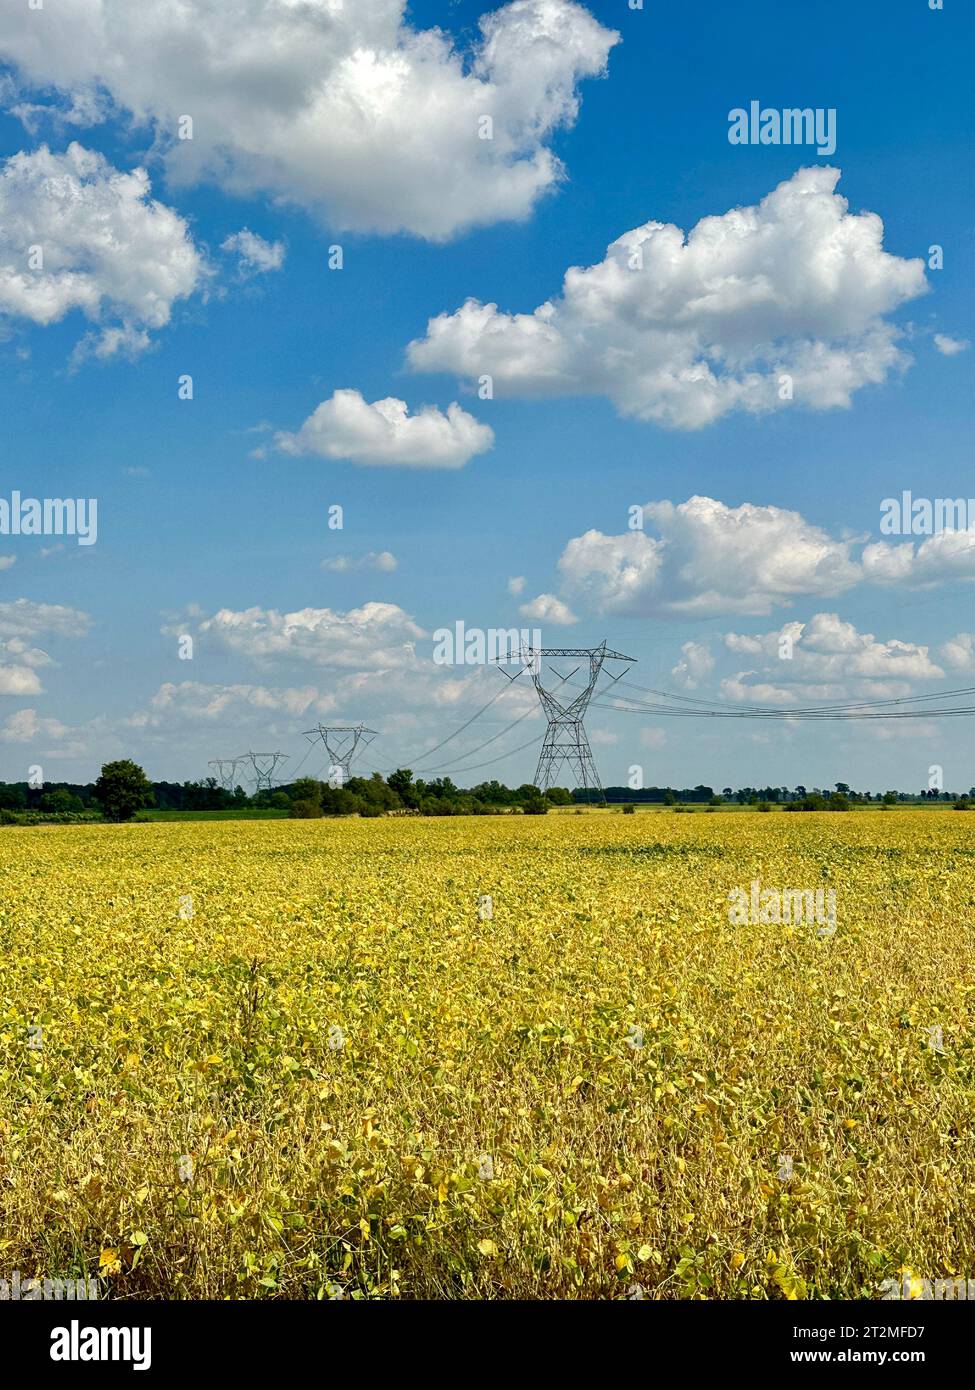 Landwirtschaftliches Feld mit Stromleitungen gegen blauen Himmel mit Wolken Stockfoto